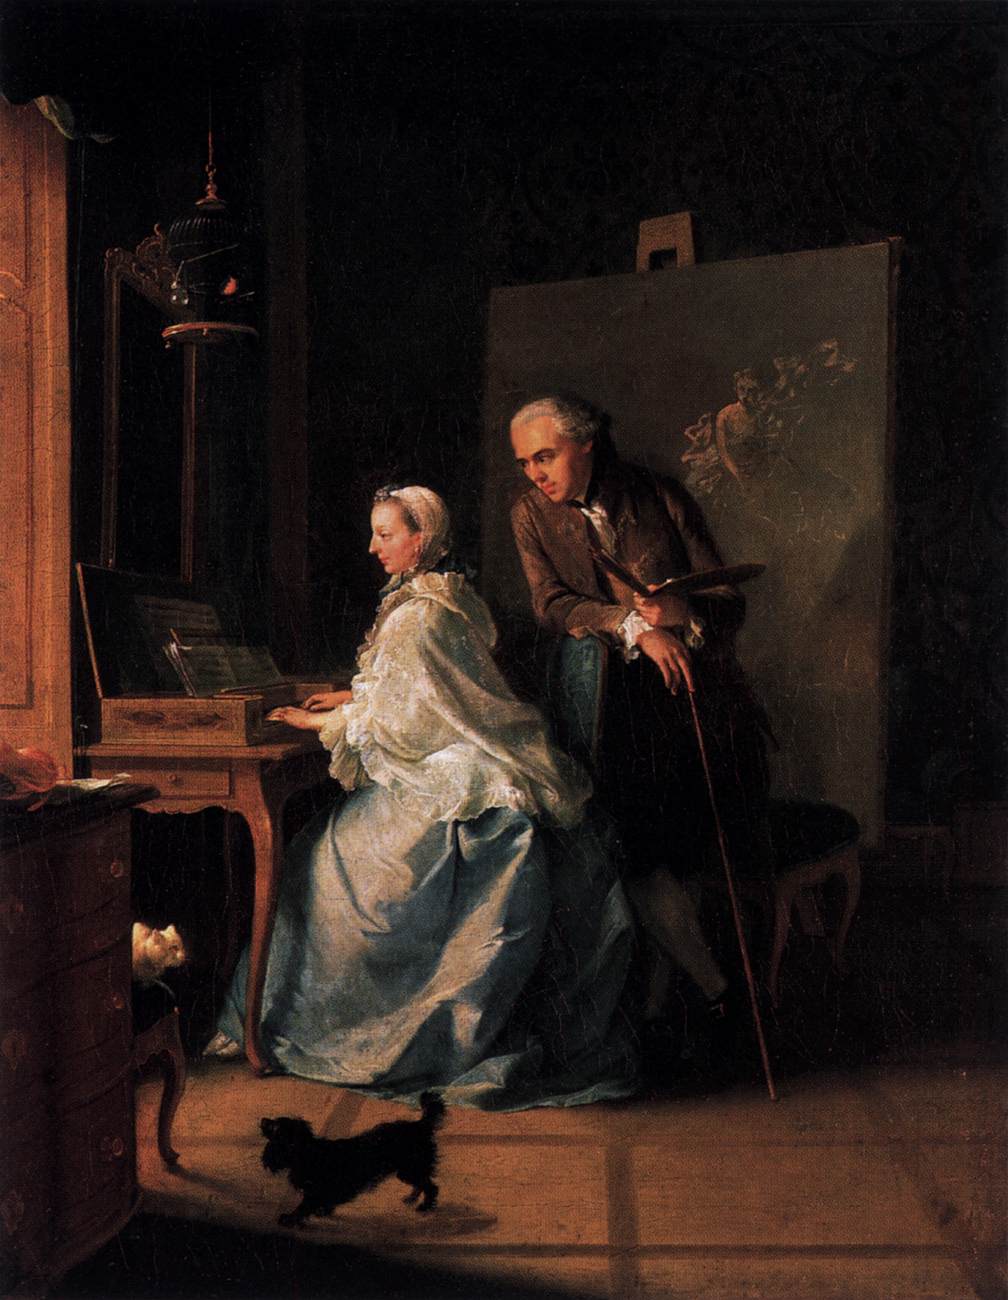 Ritratto dell'artista e sua moglie nella Spineta